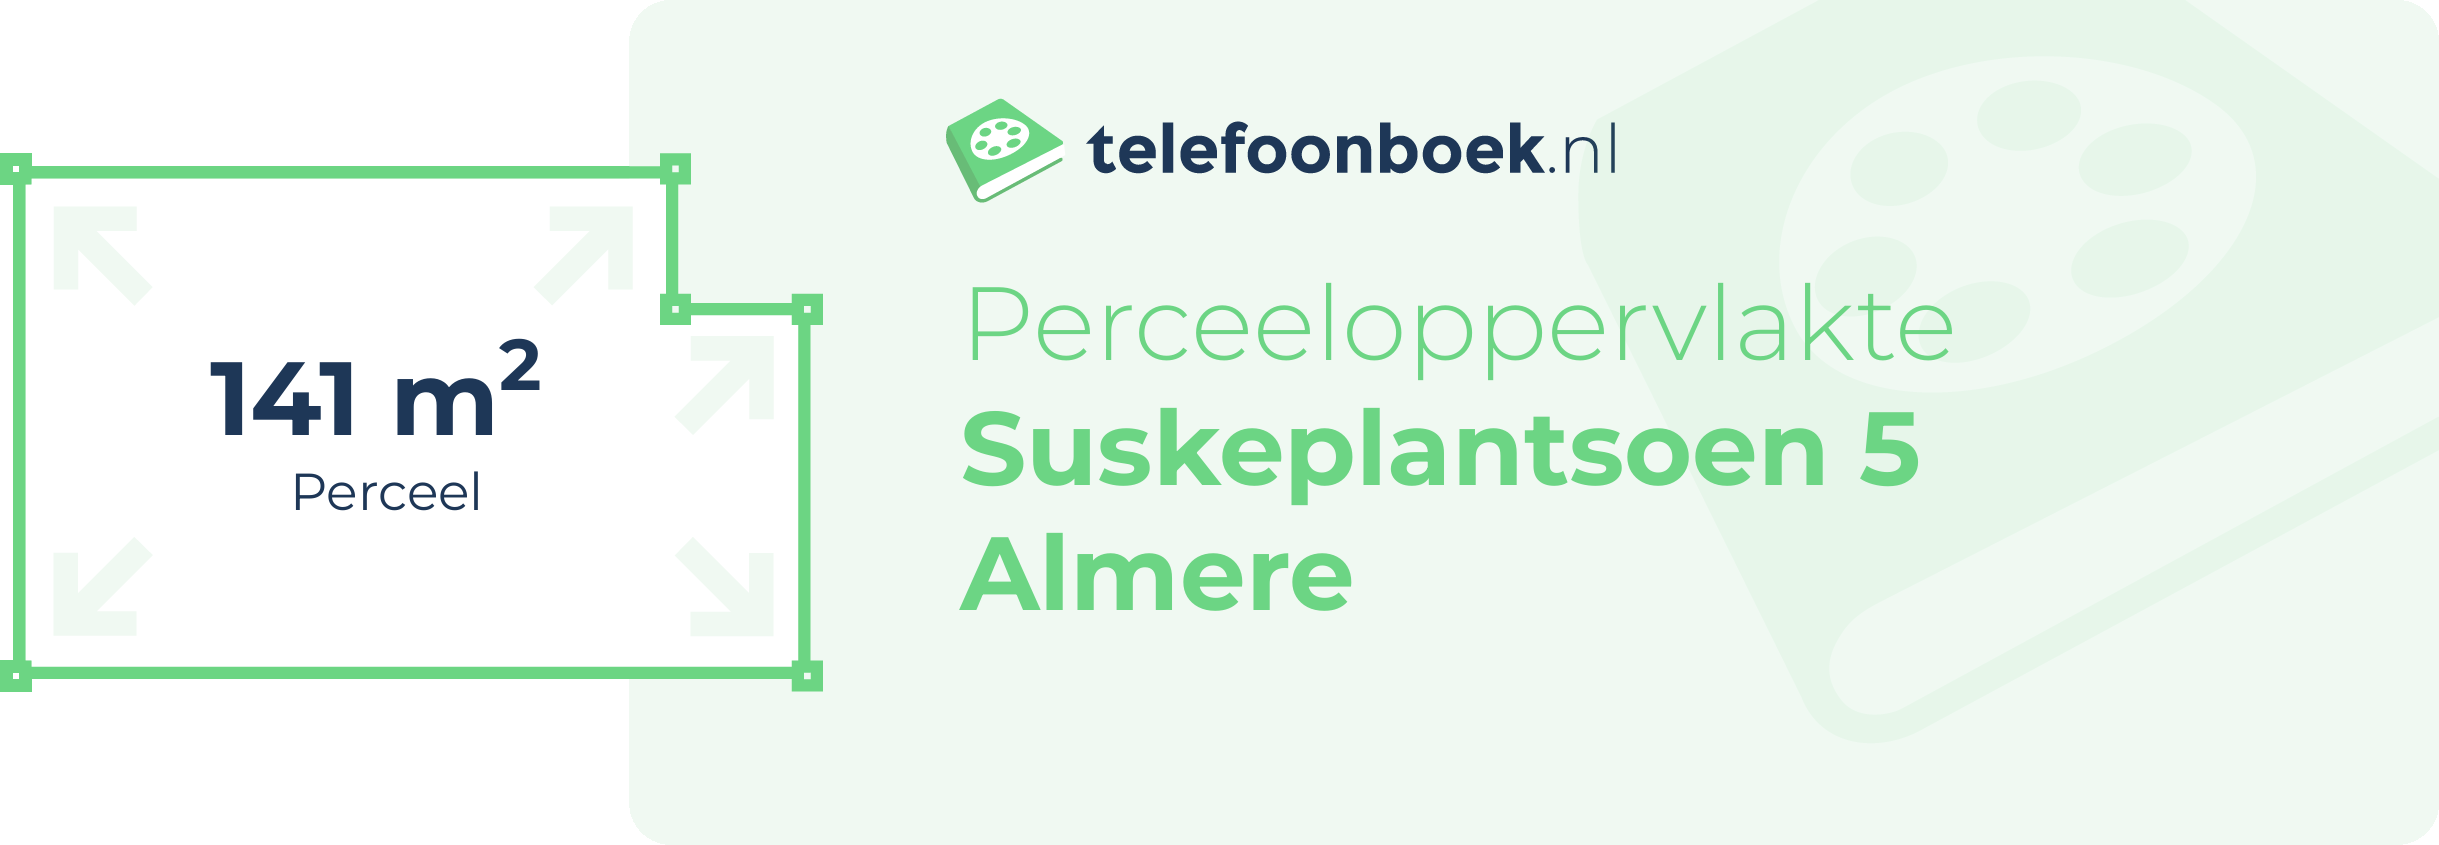 Perceeloppervlakte Suskeplantsoen 5 Almere